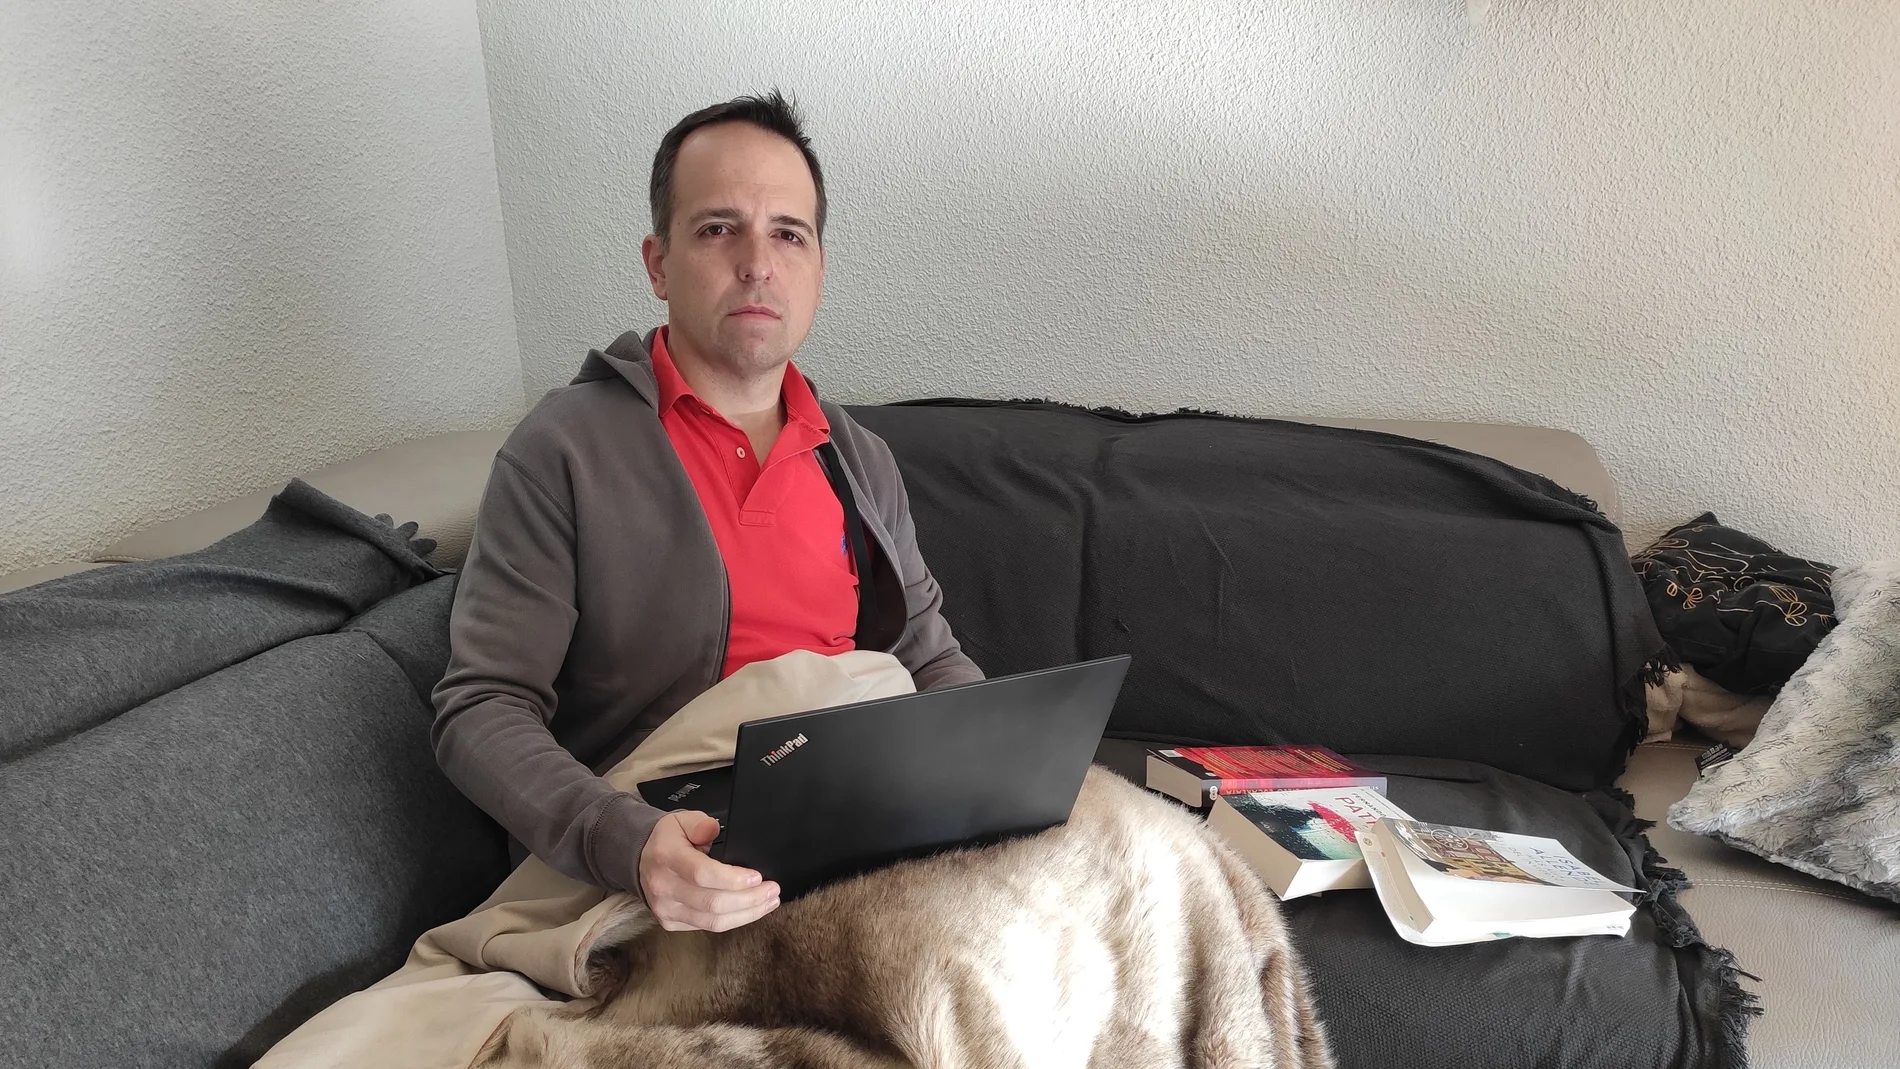 Fernando lleva desde el 26 de febrero confinado en casa esperando los resultados del test por coronavirus